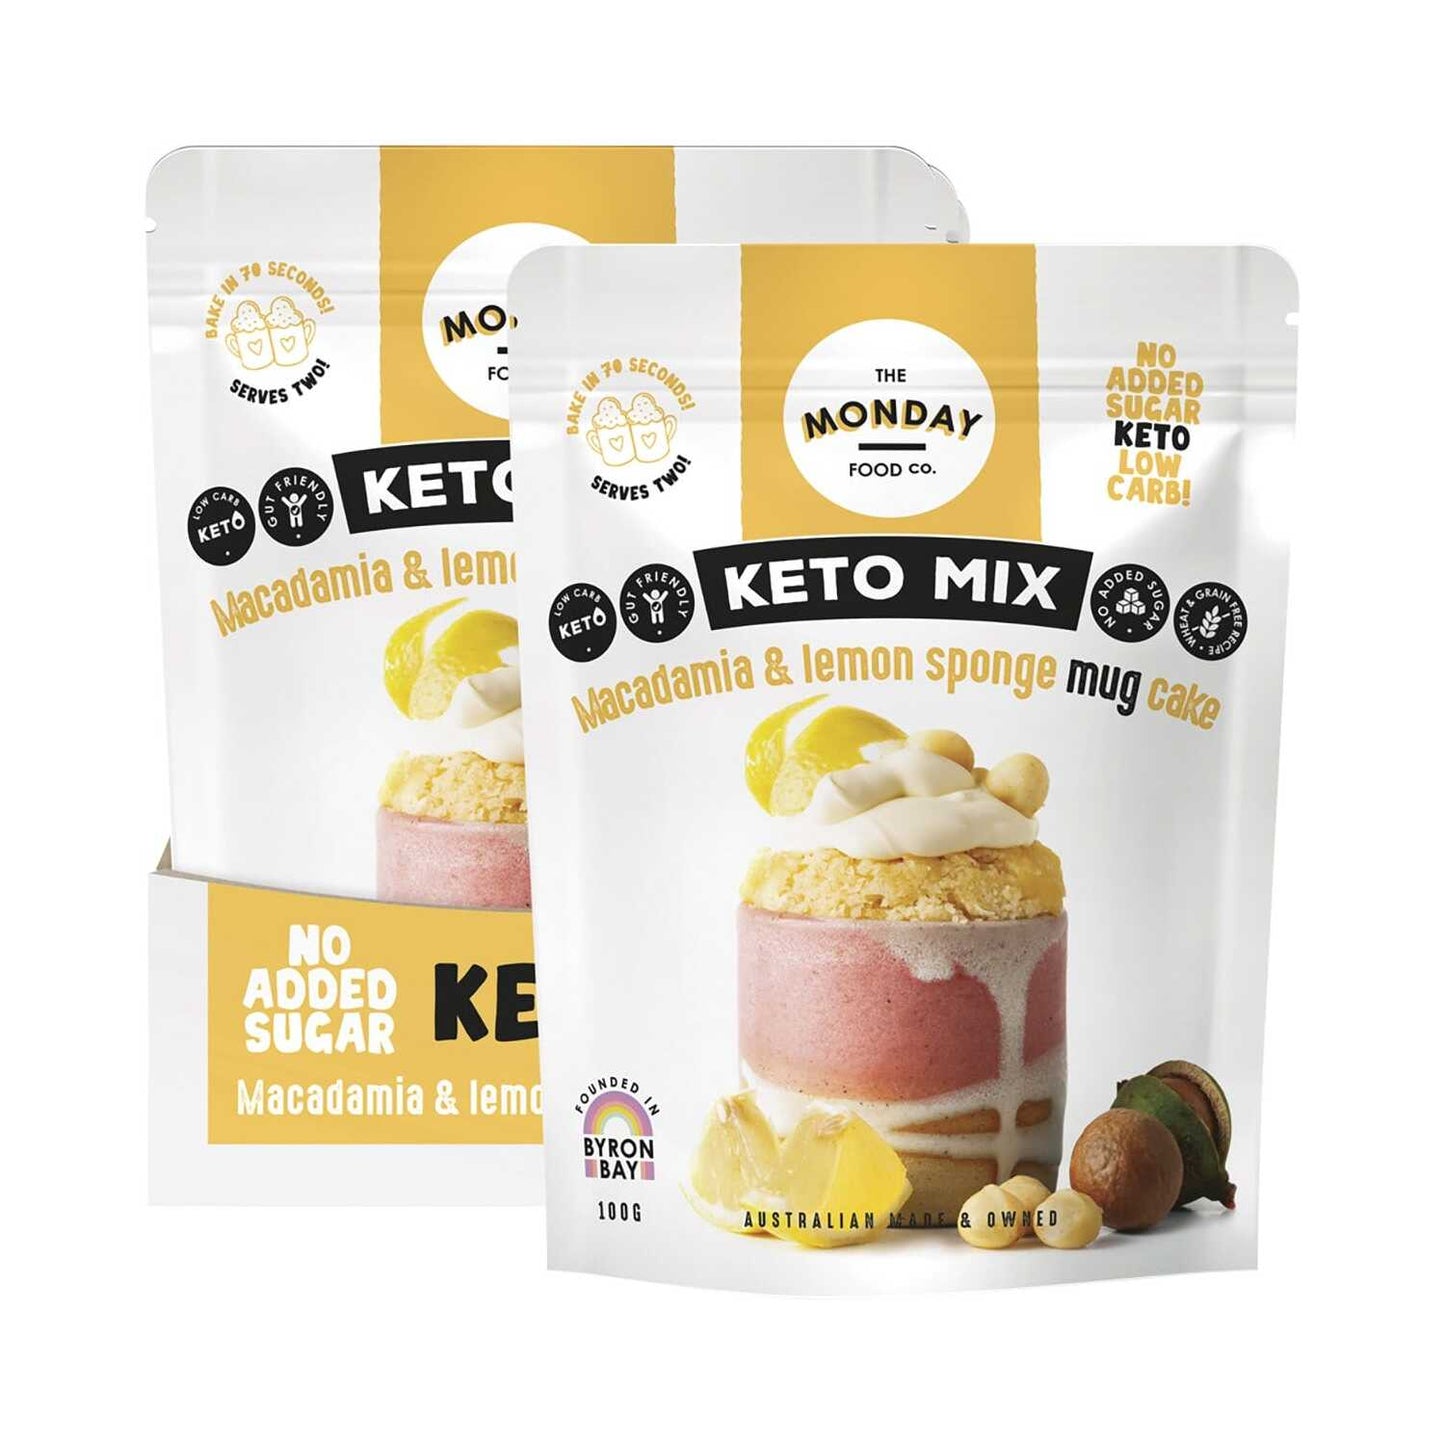 THE MONDAY FOOD CO. Keto Mug Cake Mix Macadamia & Lemon Sponge 6x100g